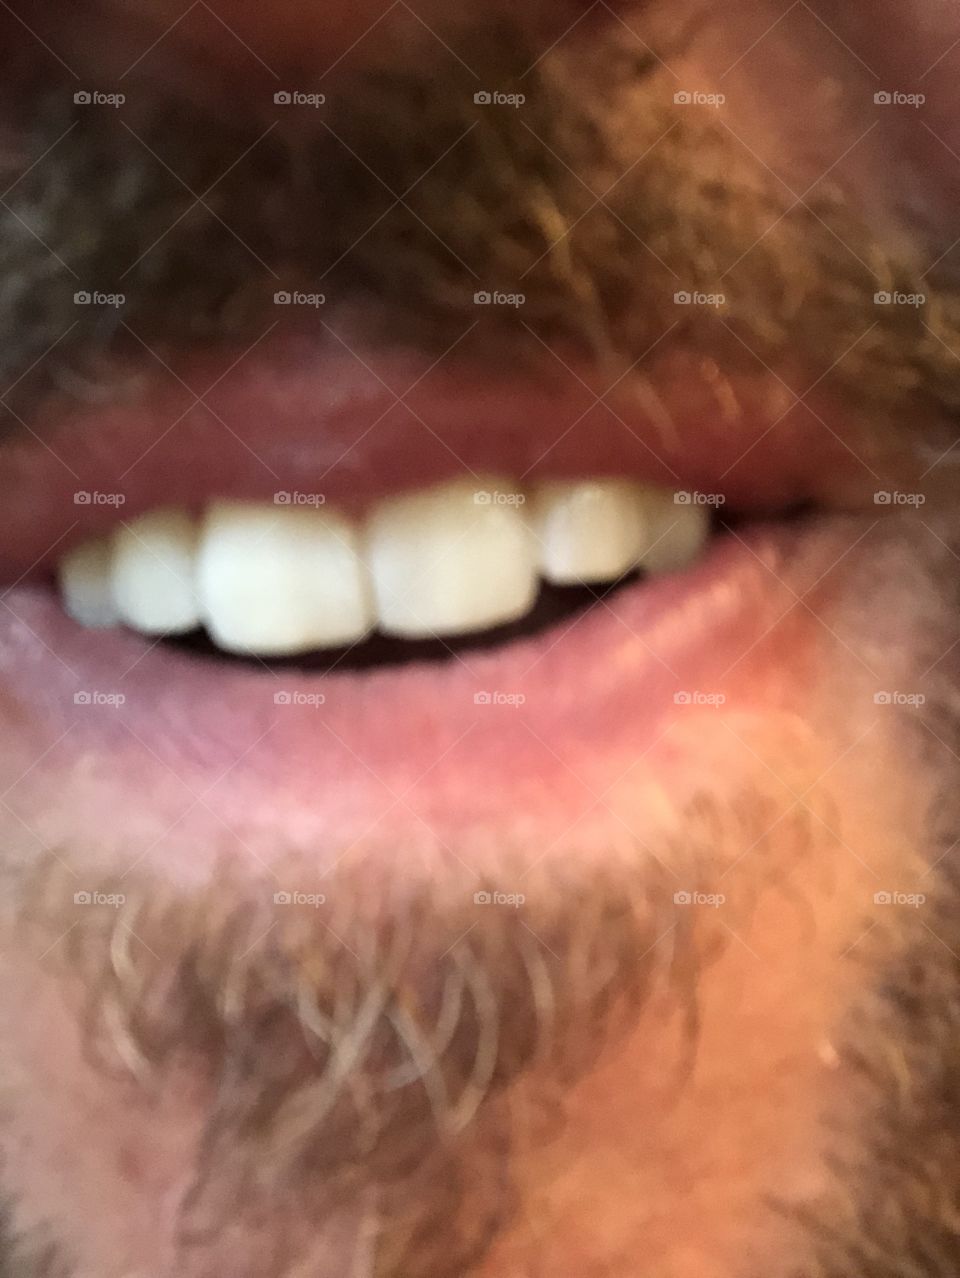 Teeth with goatee. 